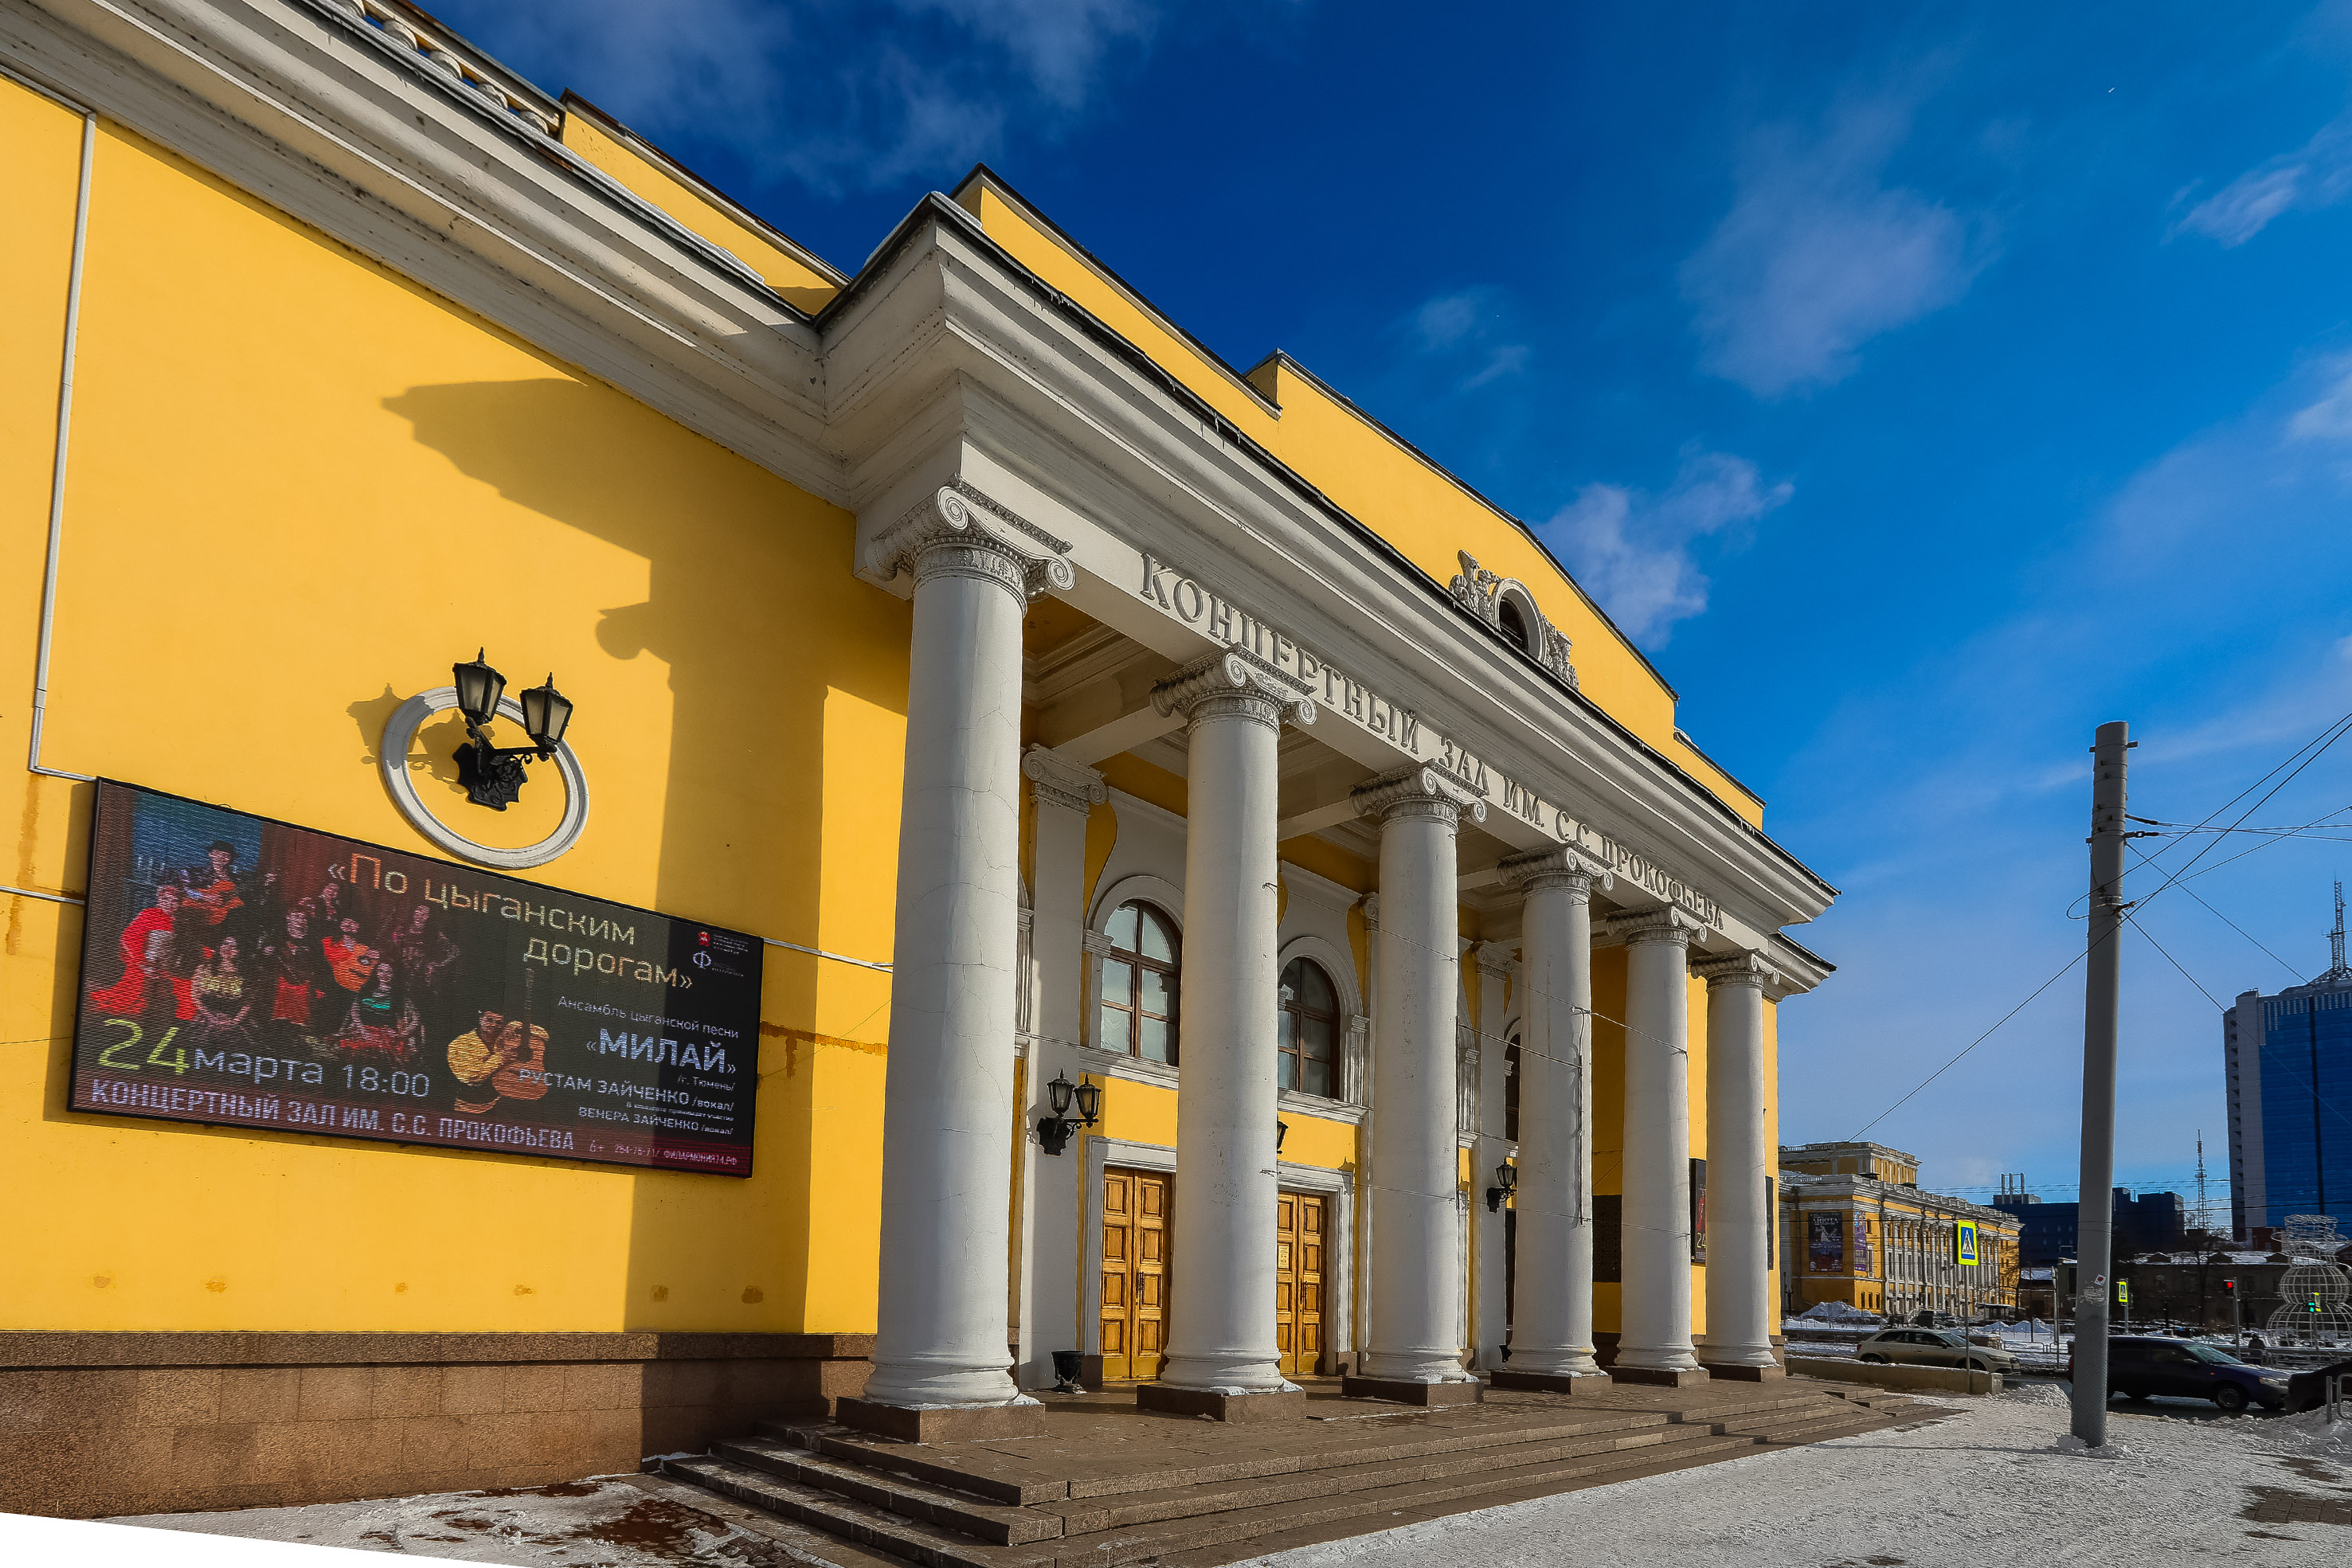 Факт хищений при ремонте объекта культуры в Челябинске не подтвердился*1